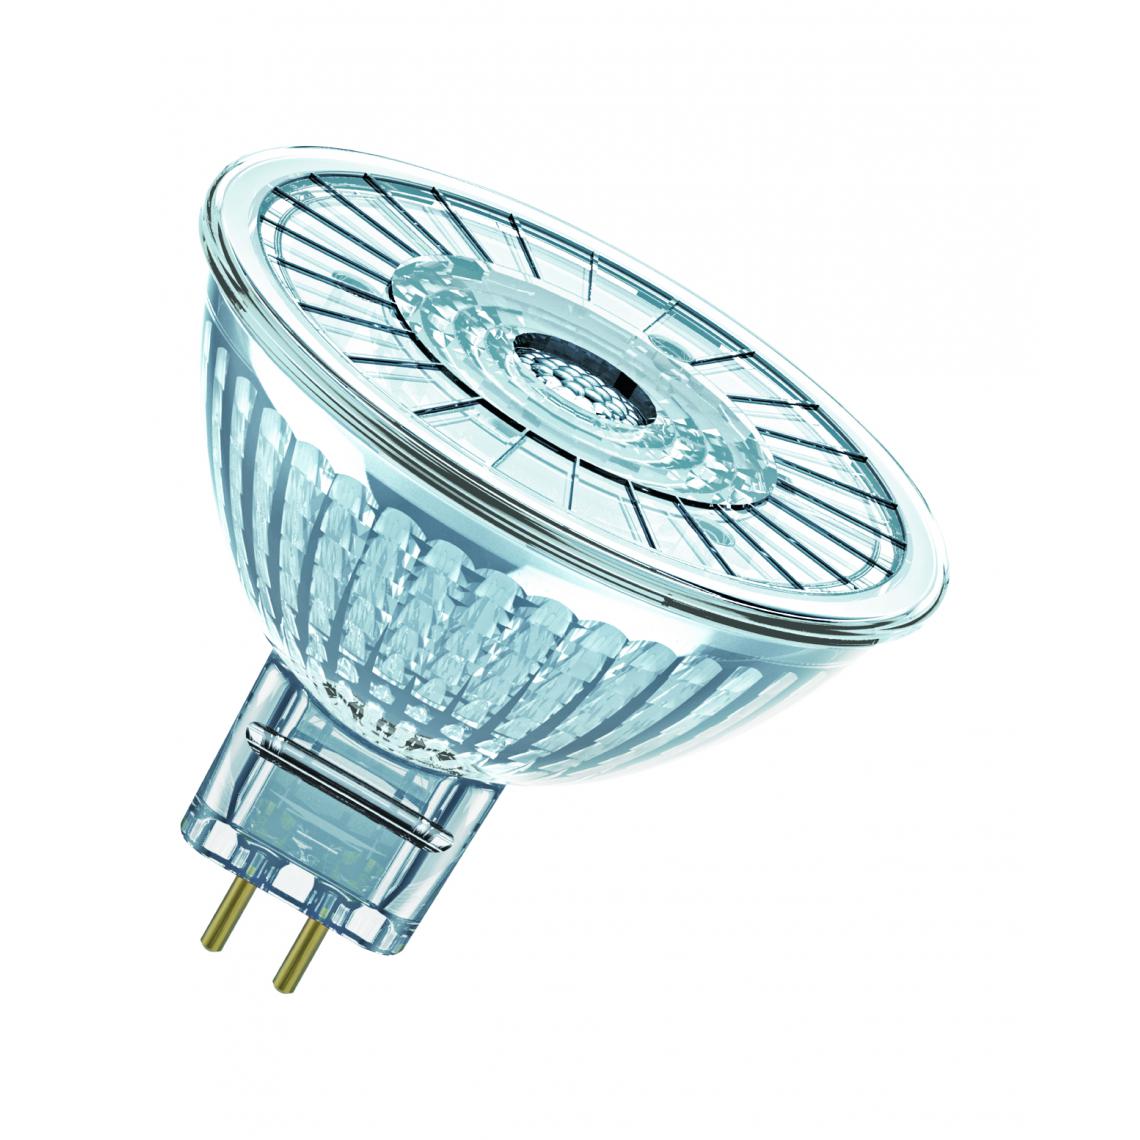 Osram - ampoule à led - osram parathom - gu5.3 - 3.8w - 2700k - 350 lm - mr16 - osram 431256 - Ampoules LED